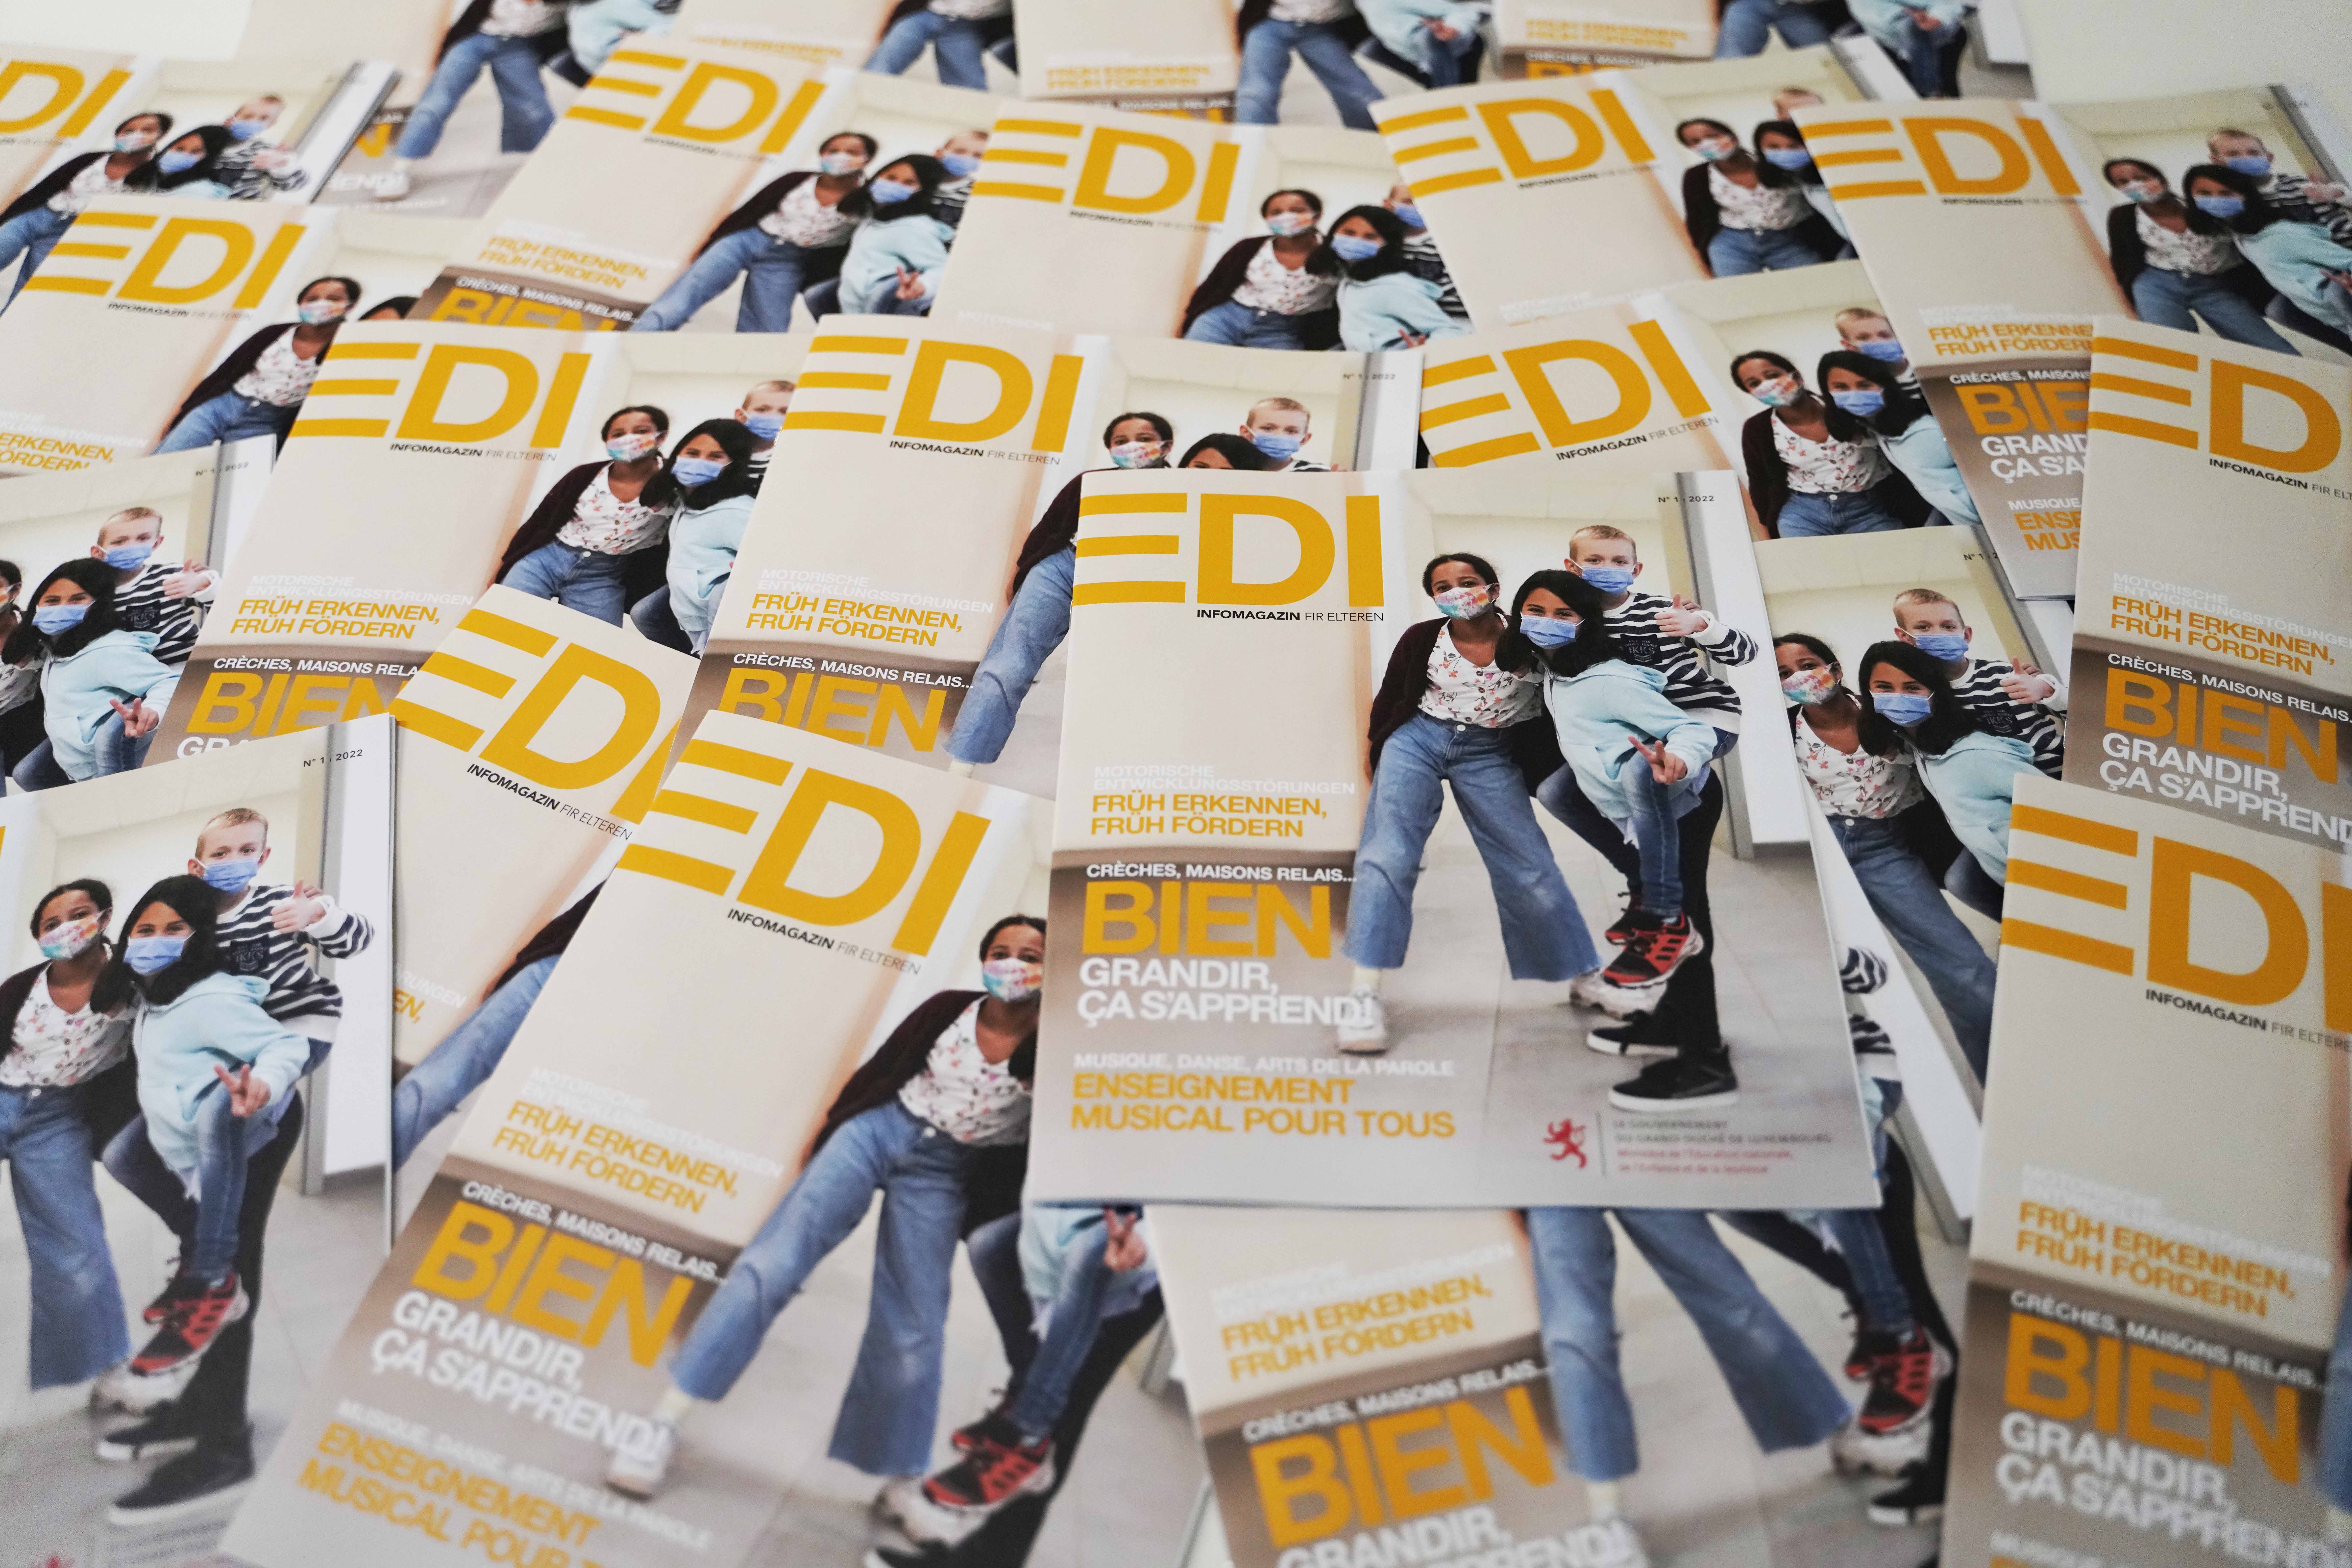 Bien grandir, ça s’apprend ! Découvrez la neuvième édition d’EDI - Infomagazin fir Elteren !